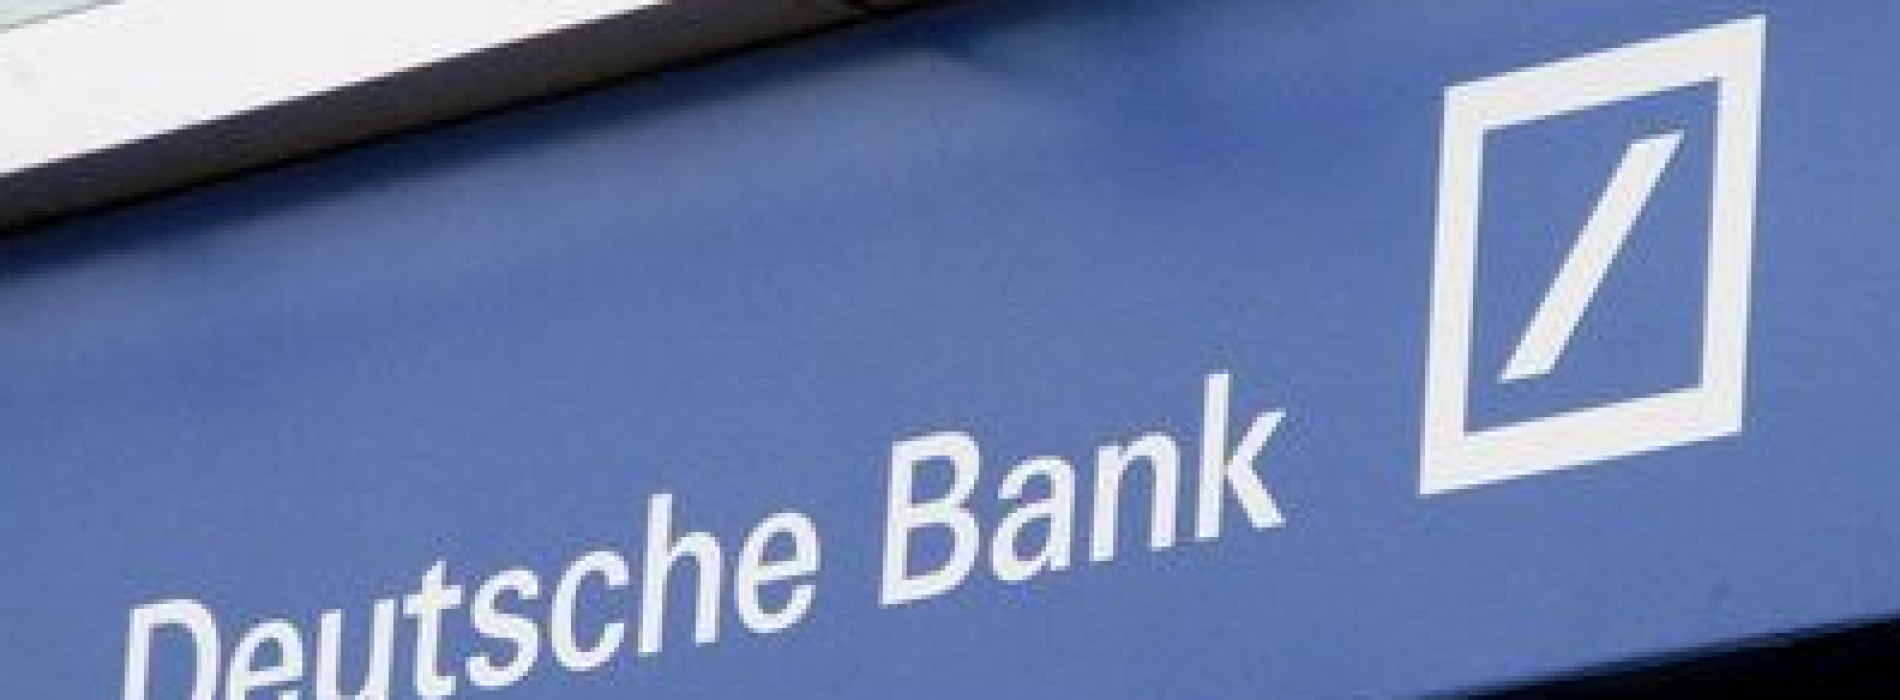 Najbardziej zyskowne produkty strukturyzowane w ofercie Deutsche Bank